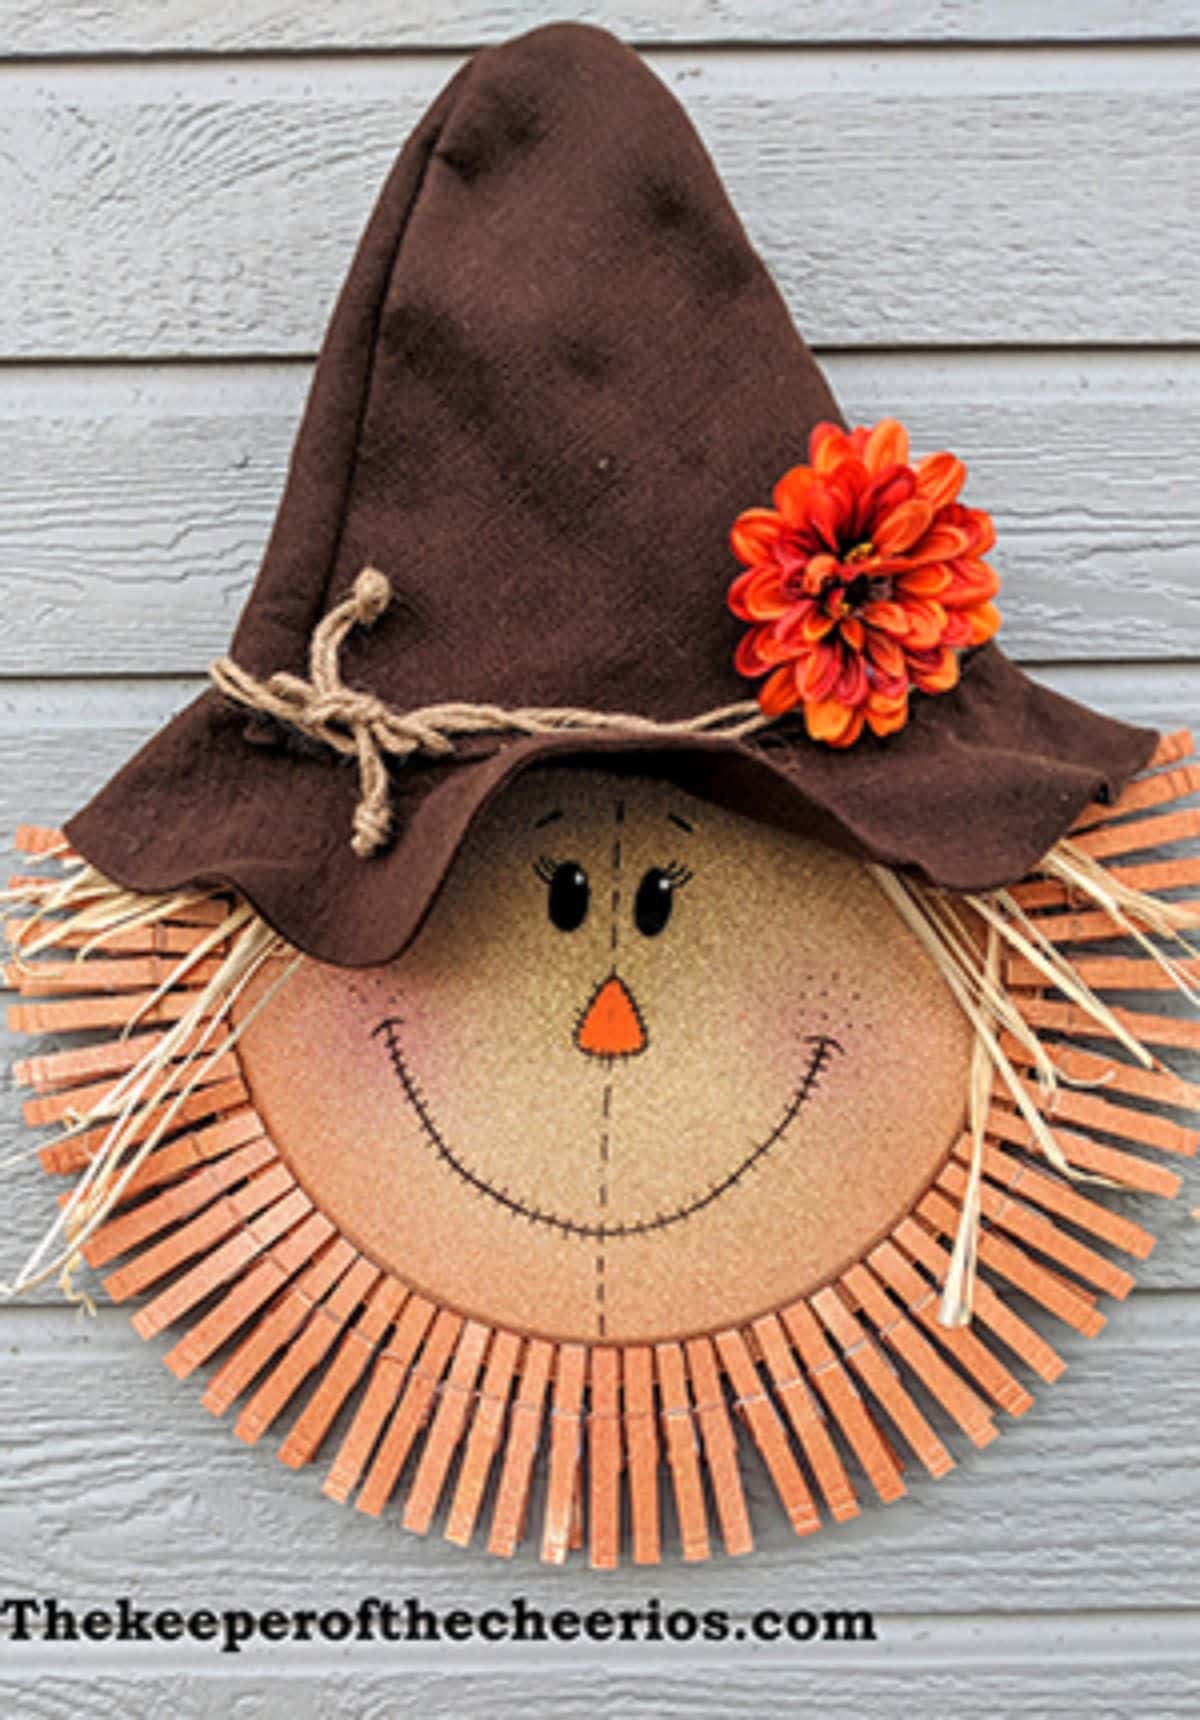 Scarecrow Pizza Pan Clothespin Wreath